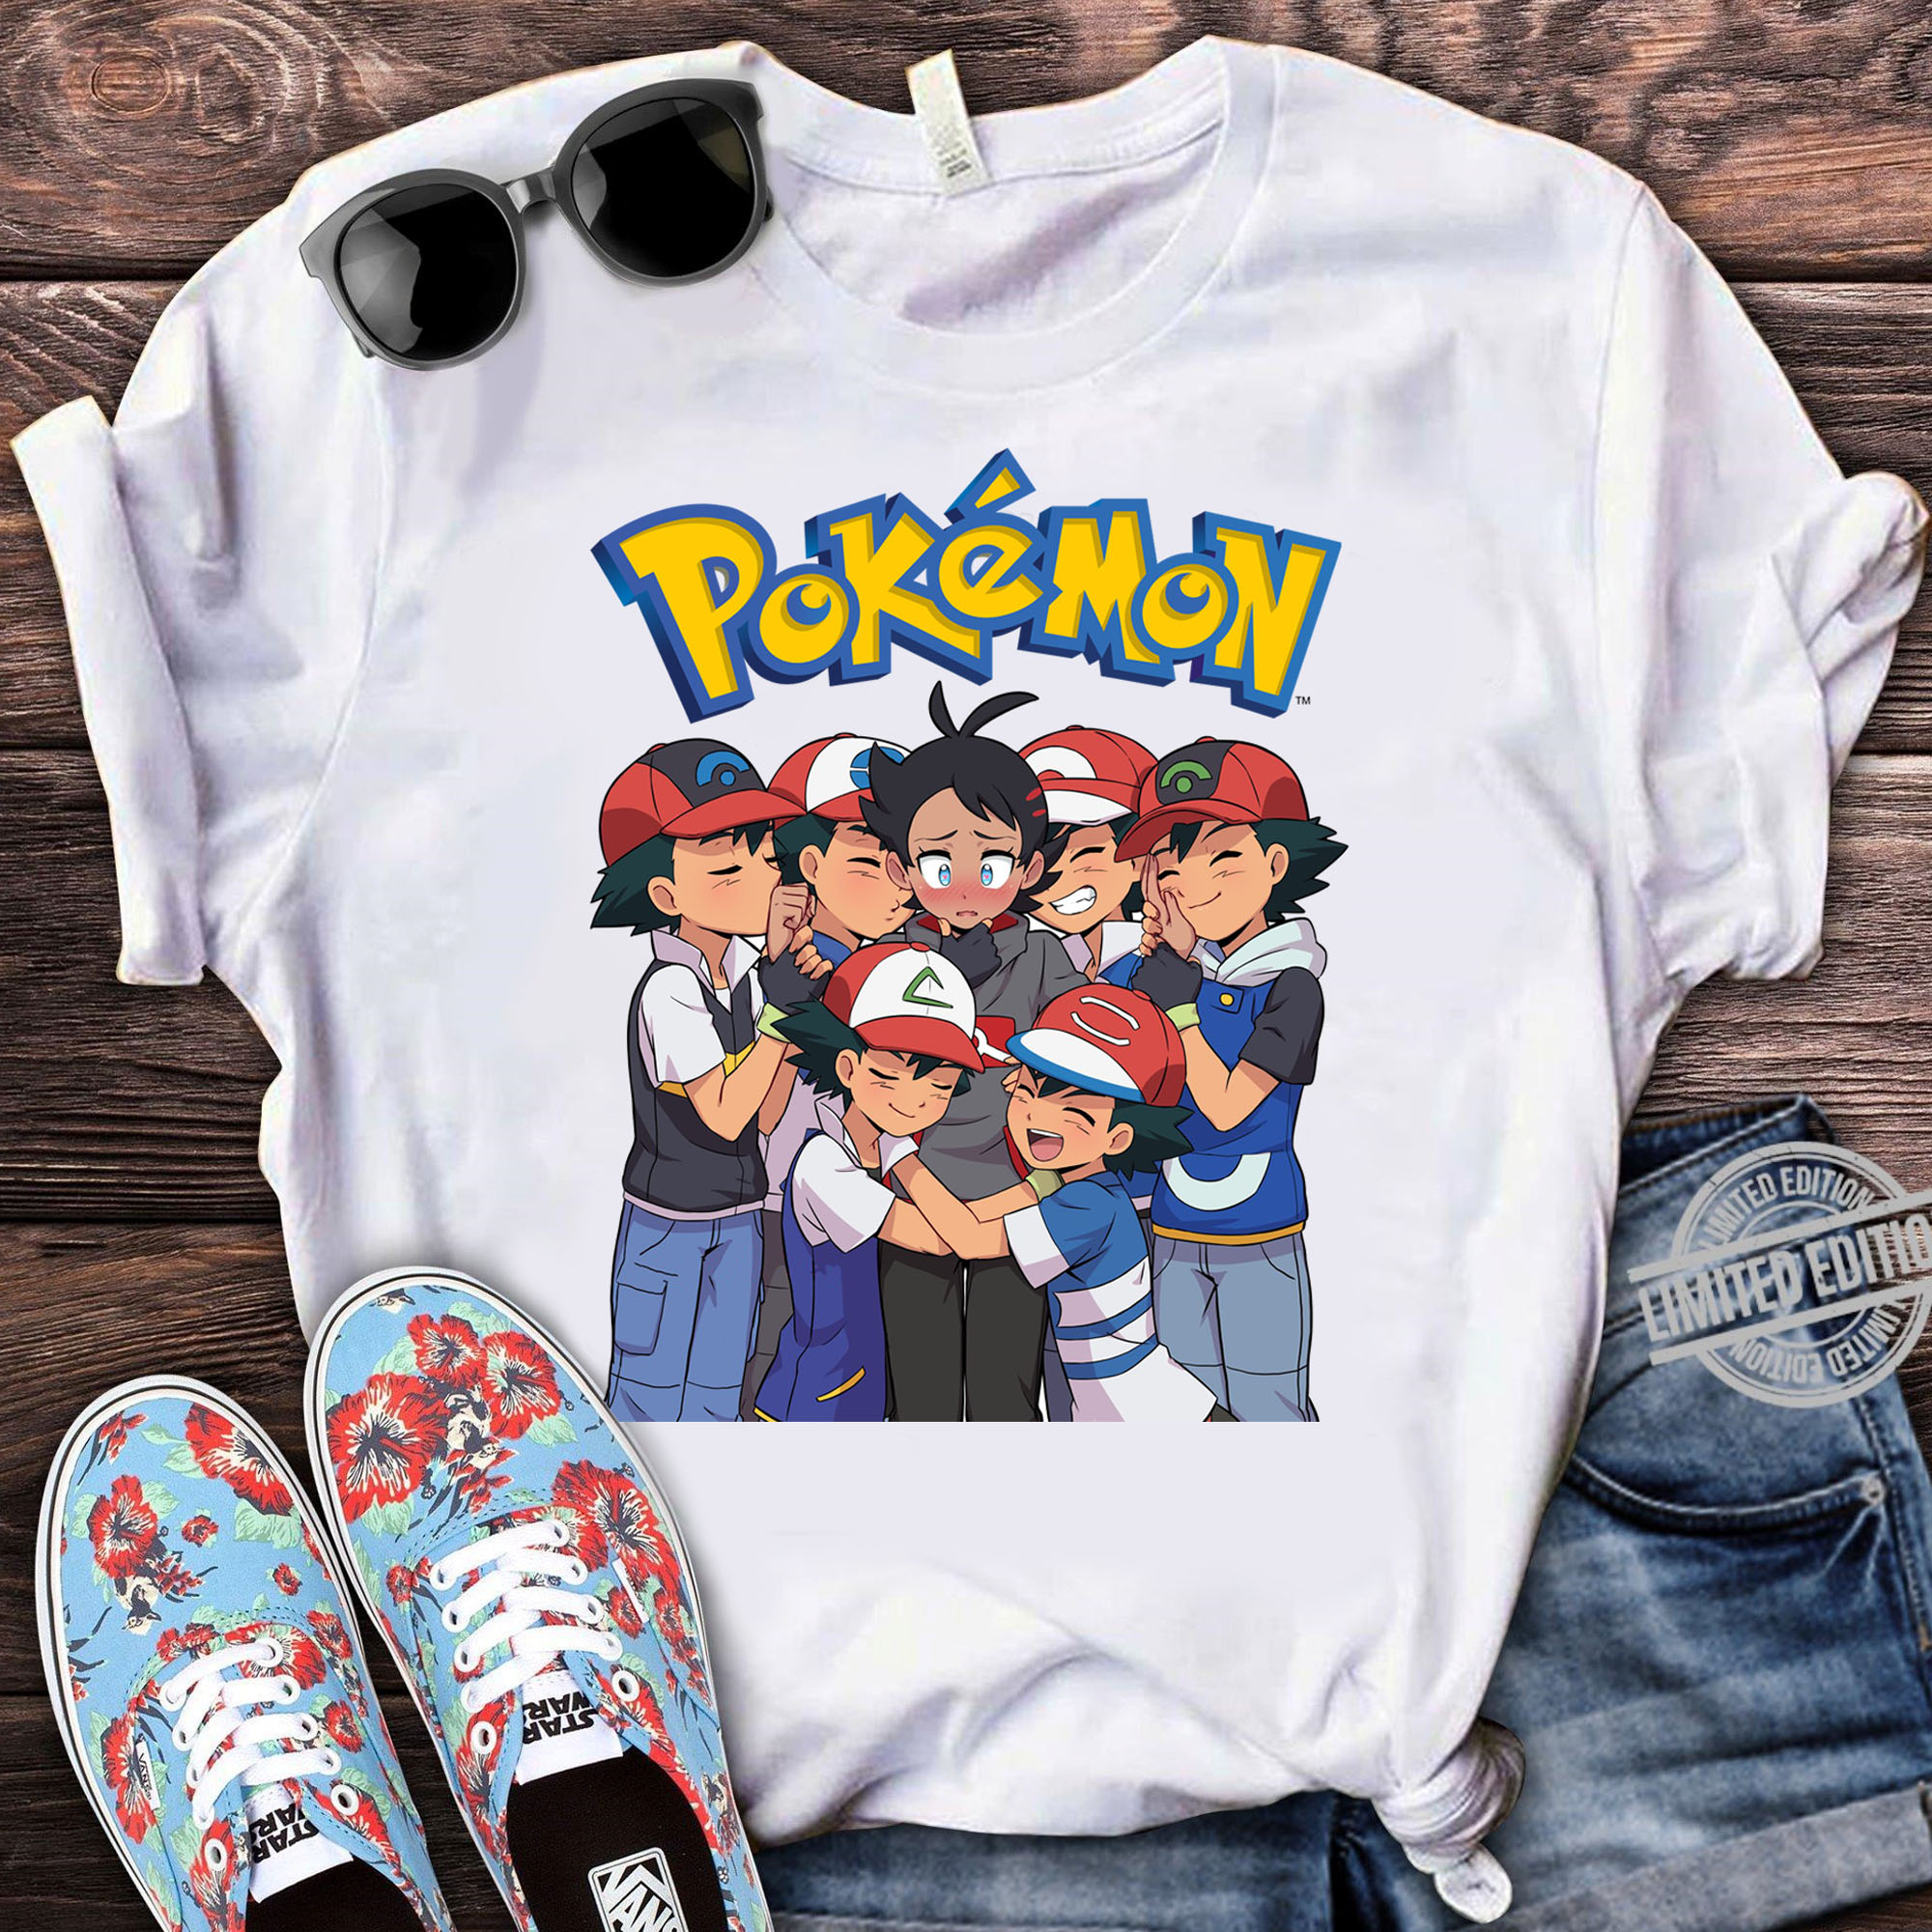 Pokemon Ash Ketchum Shirt,90s Pokemon Shirt, Pikachu retro Shirt, Game boy Shirt